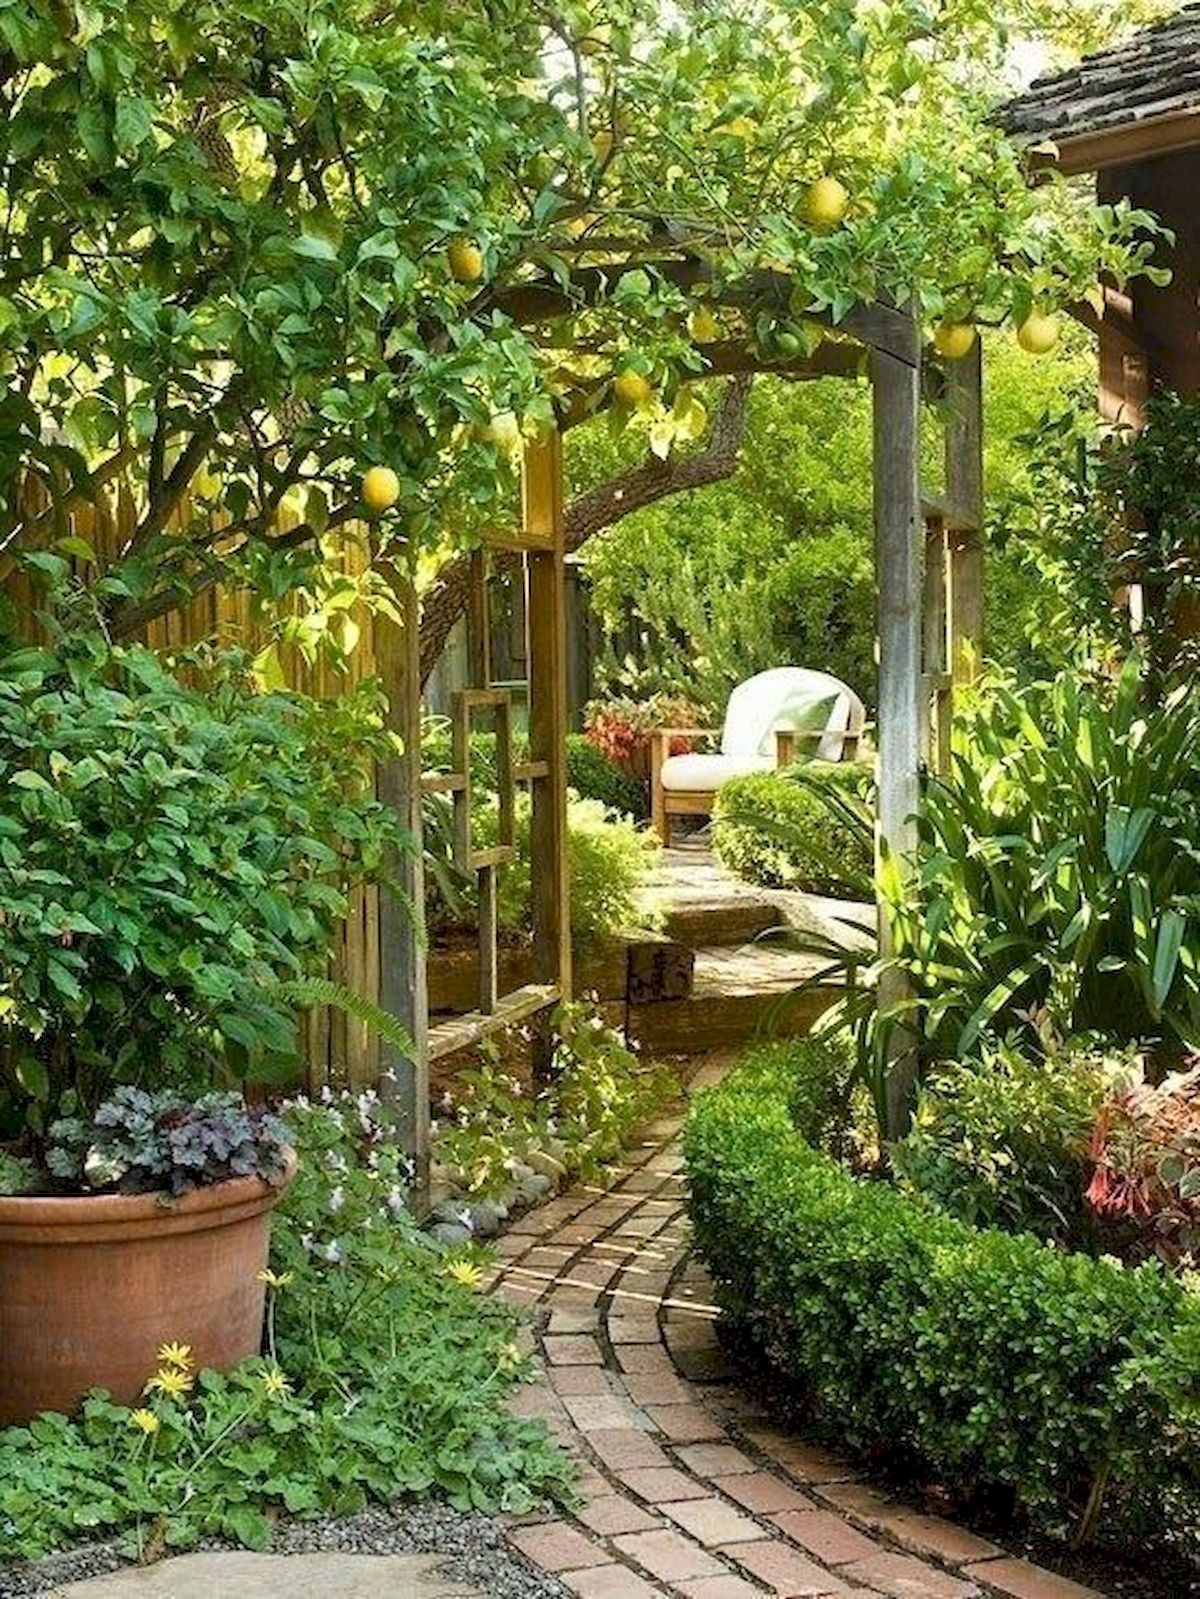 Уличная дача. Гарден сад Garden Sad. Обустройство сада. Красивый сад на даче. Уютный уголок в саду.